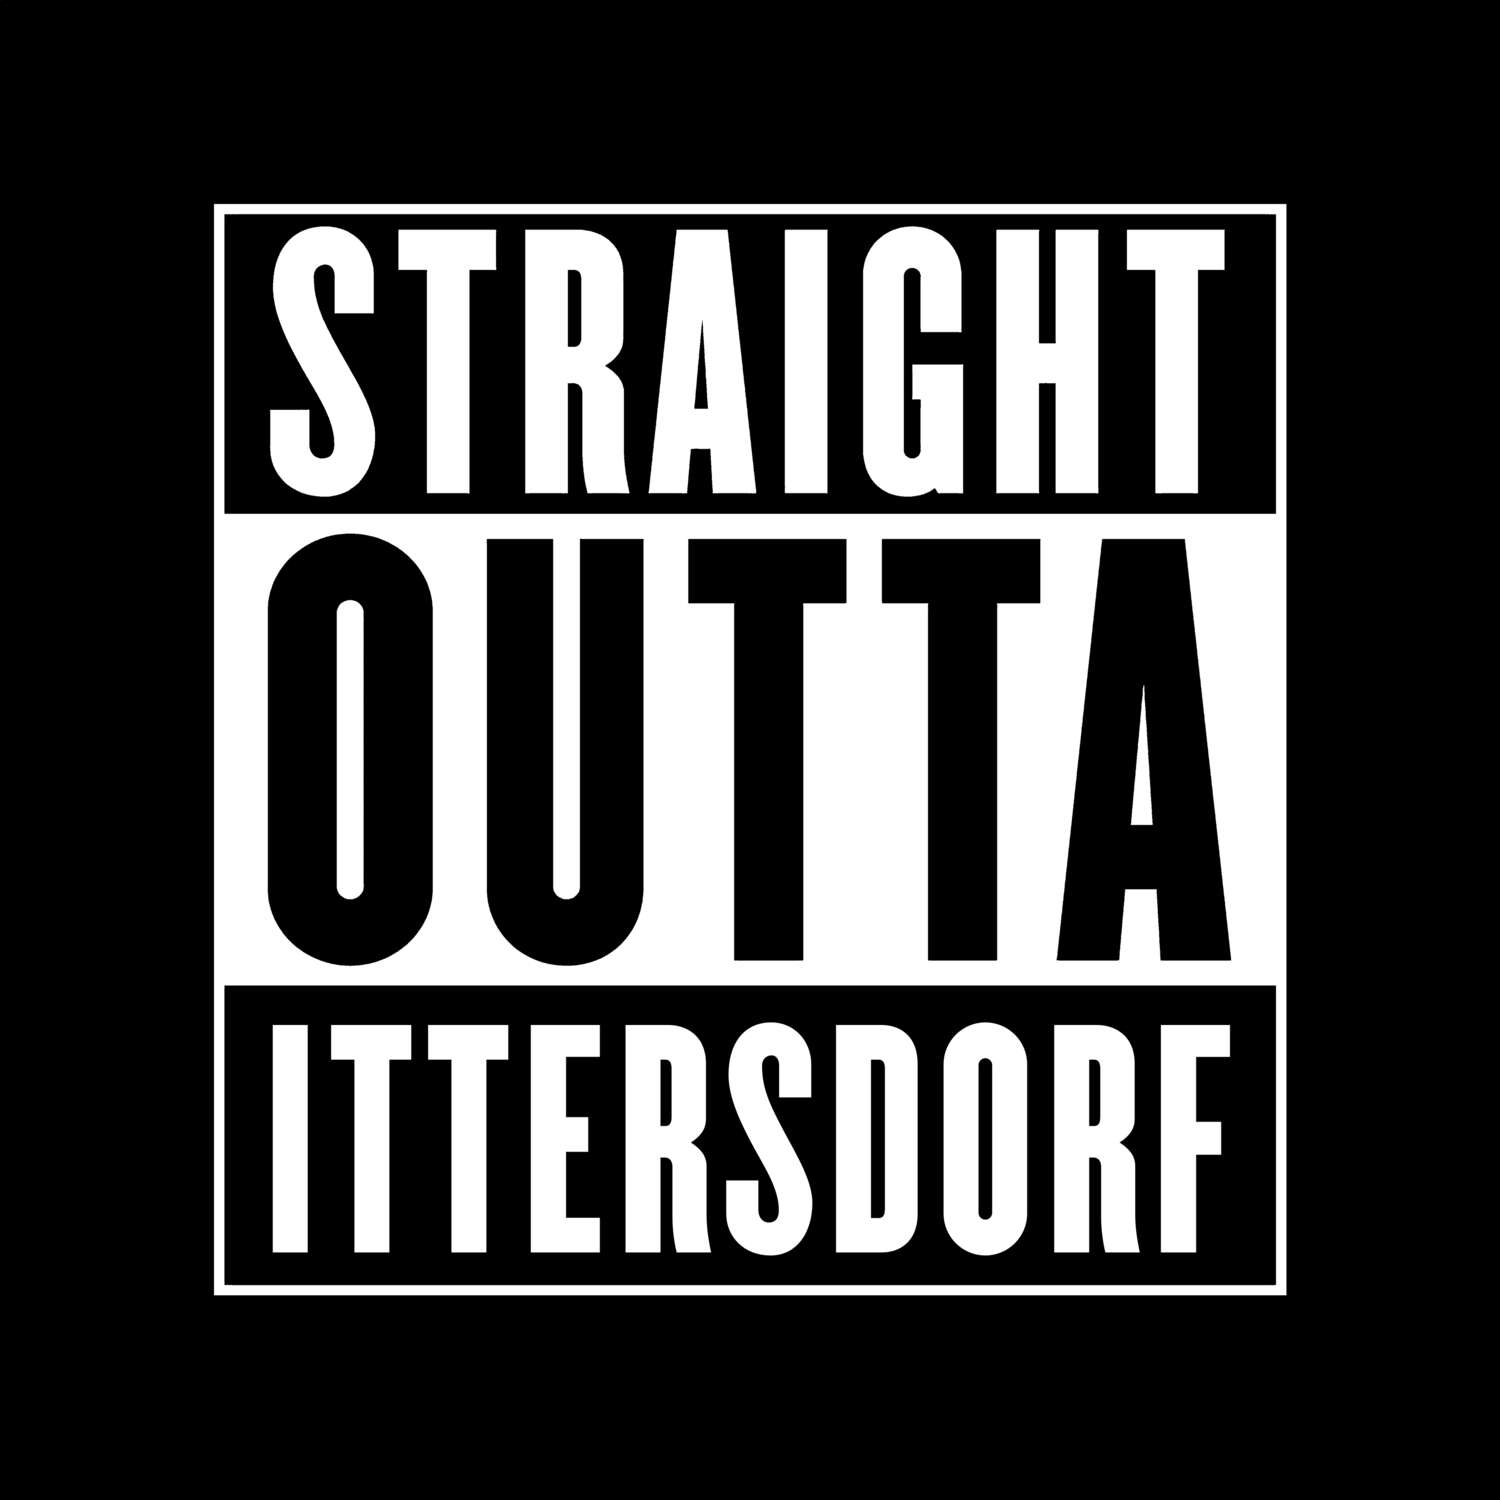 Ittersdorf T-Shirt »Straight Outta«